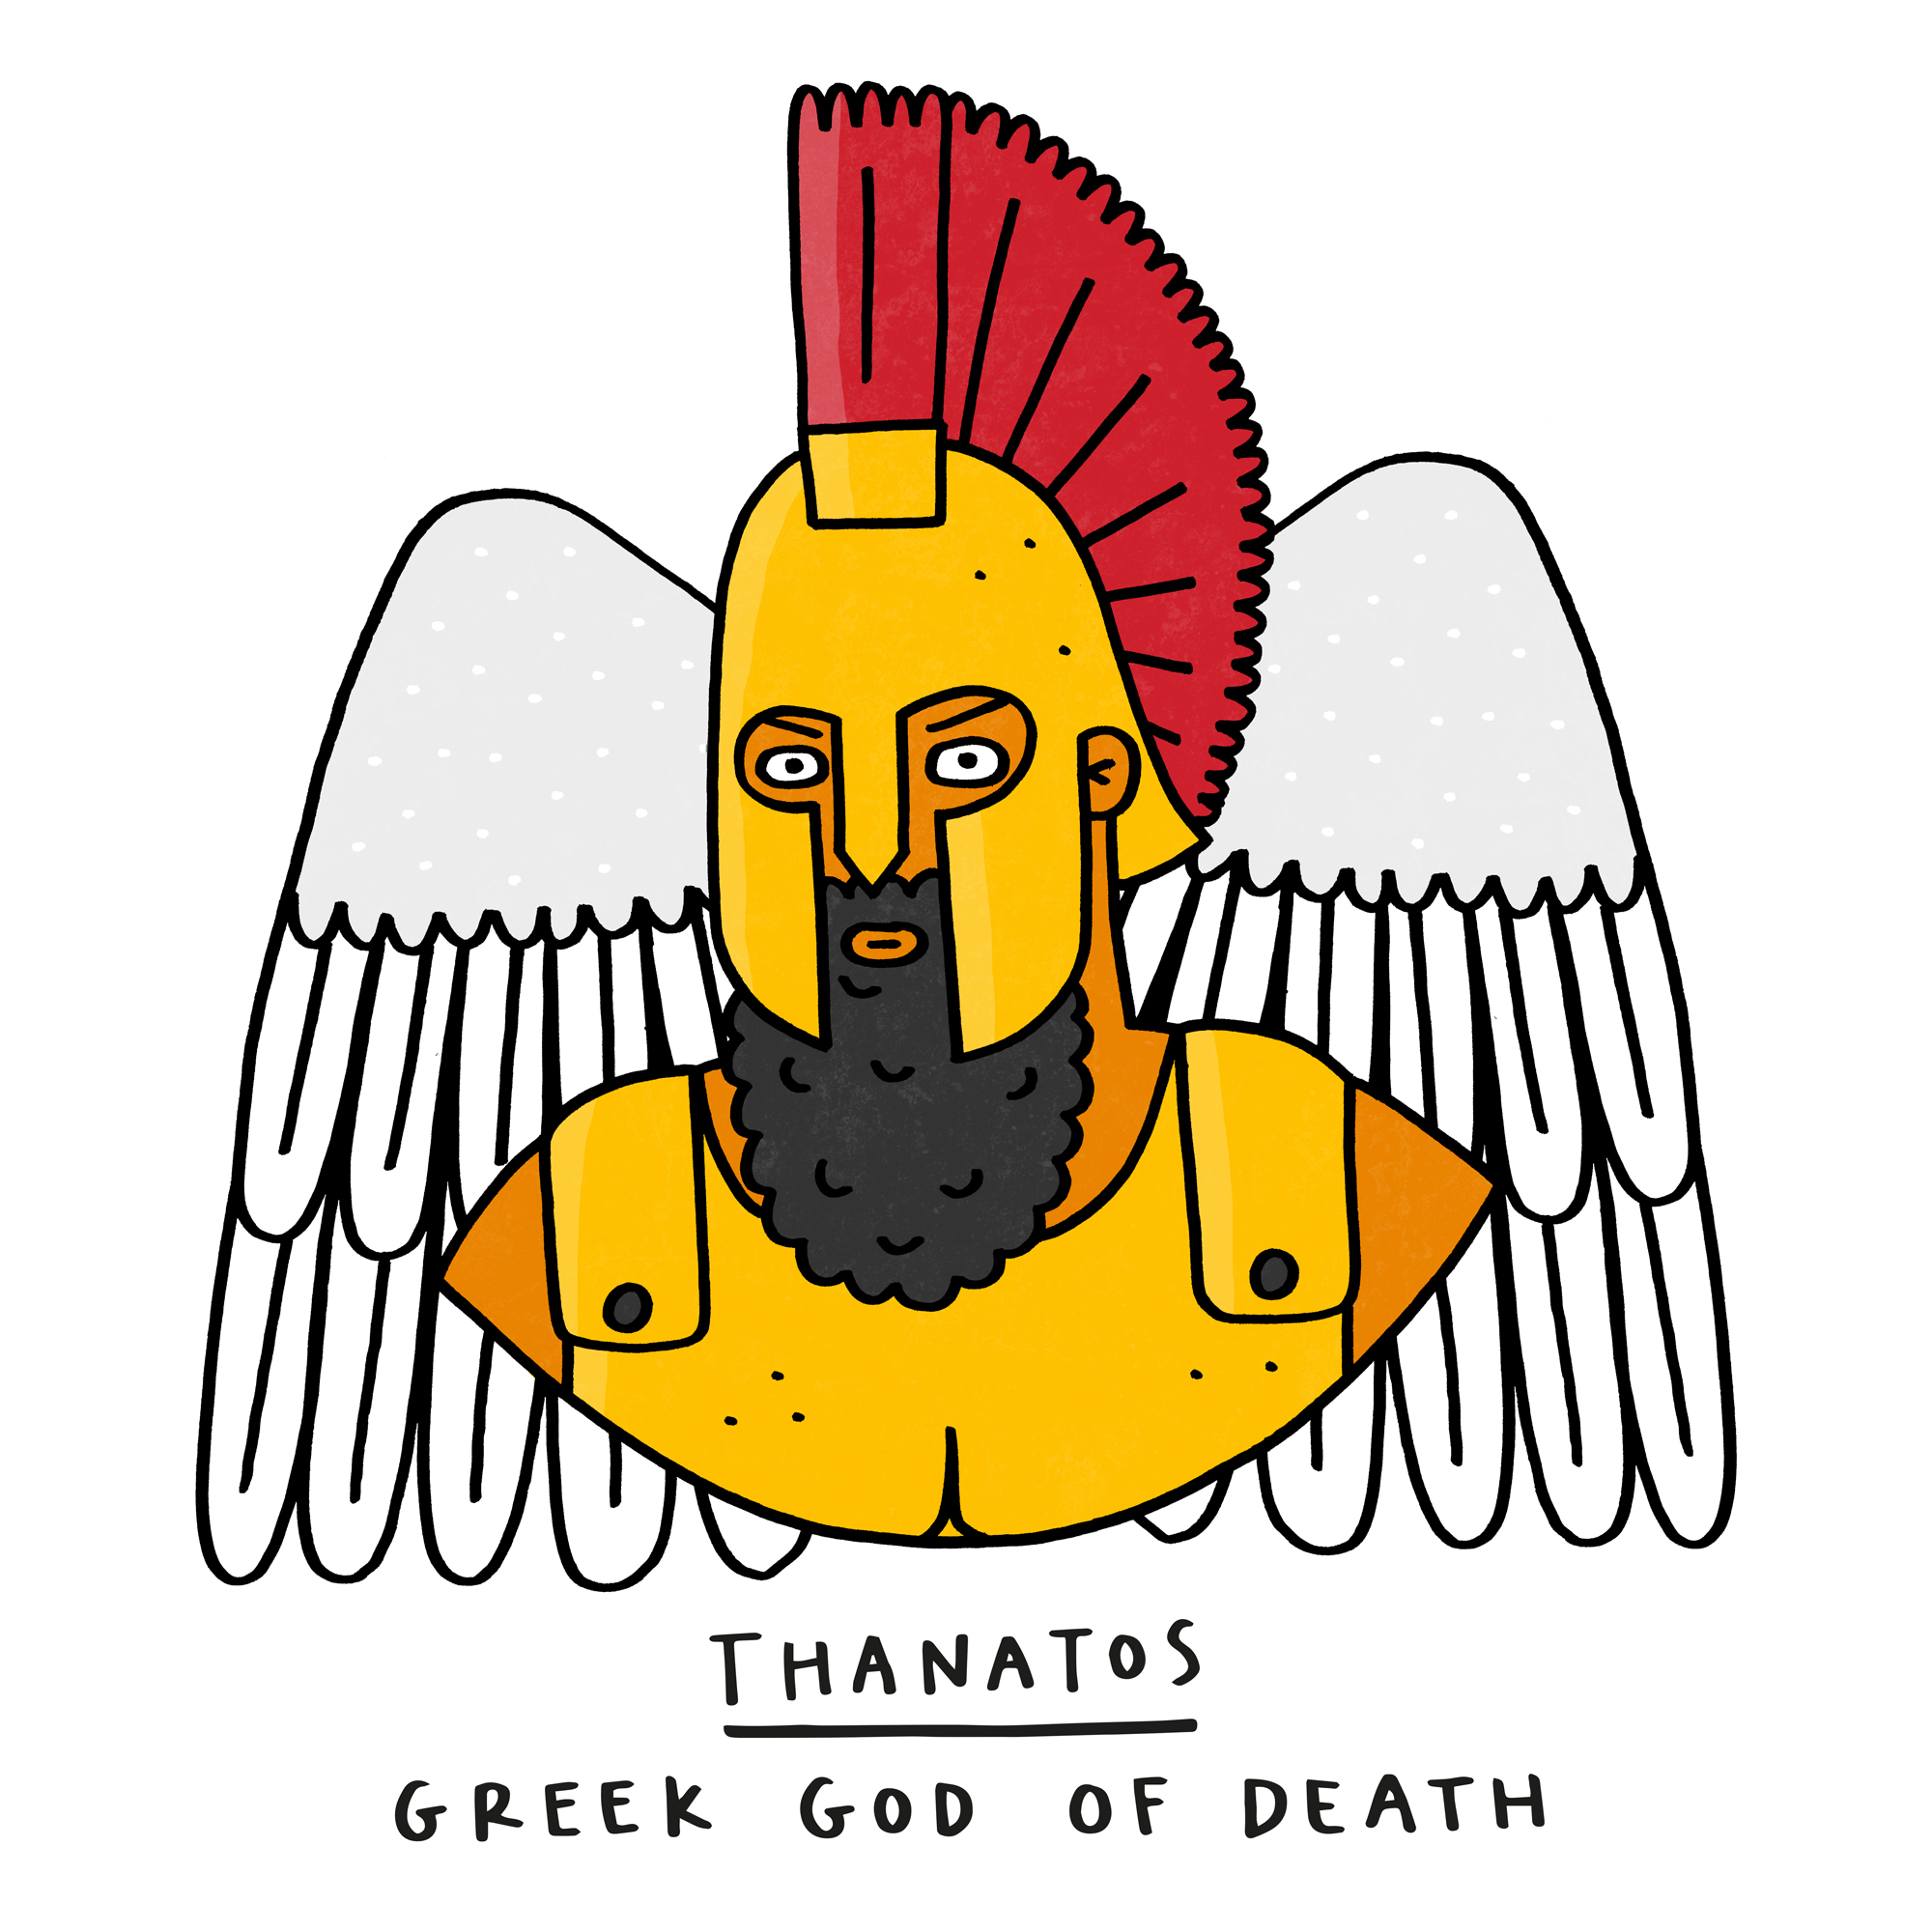 Thanatos, Greek God of Death